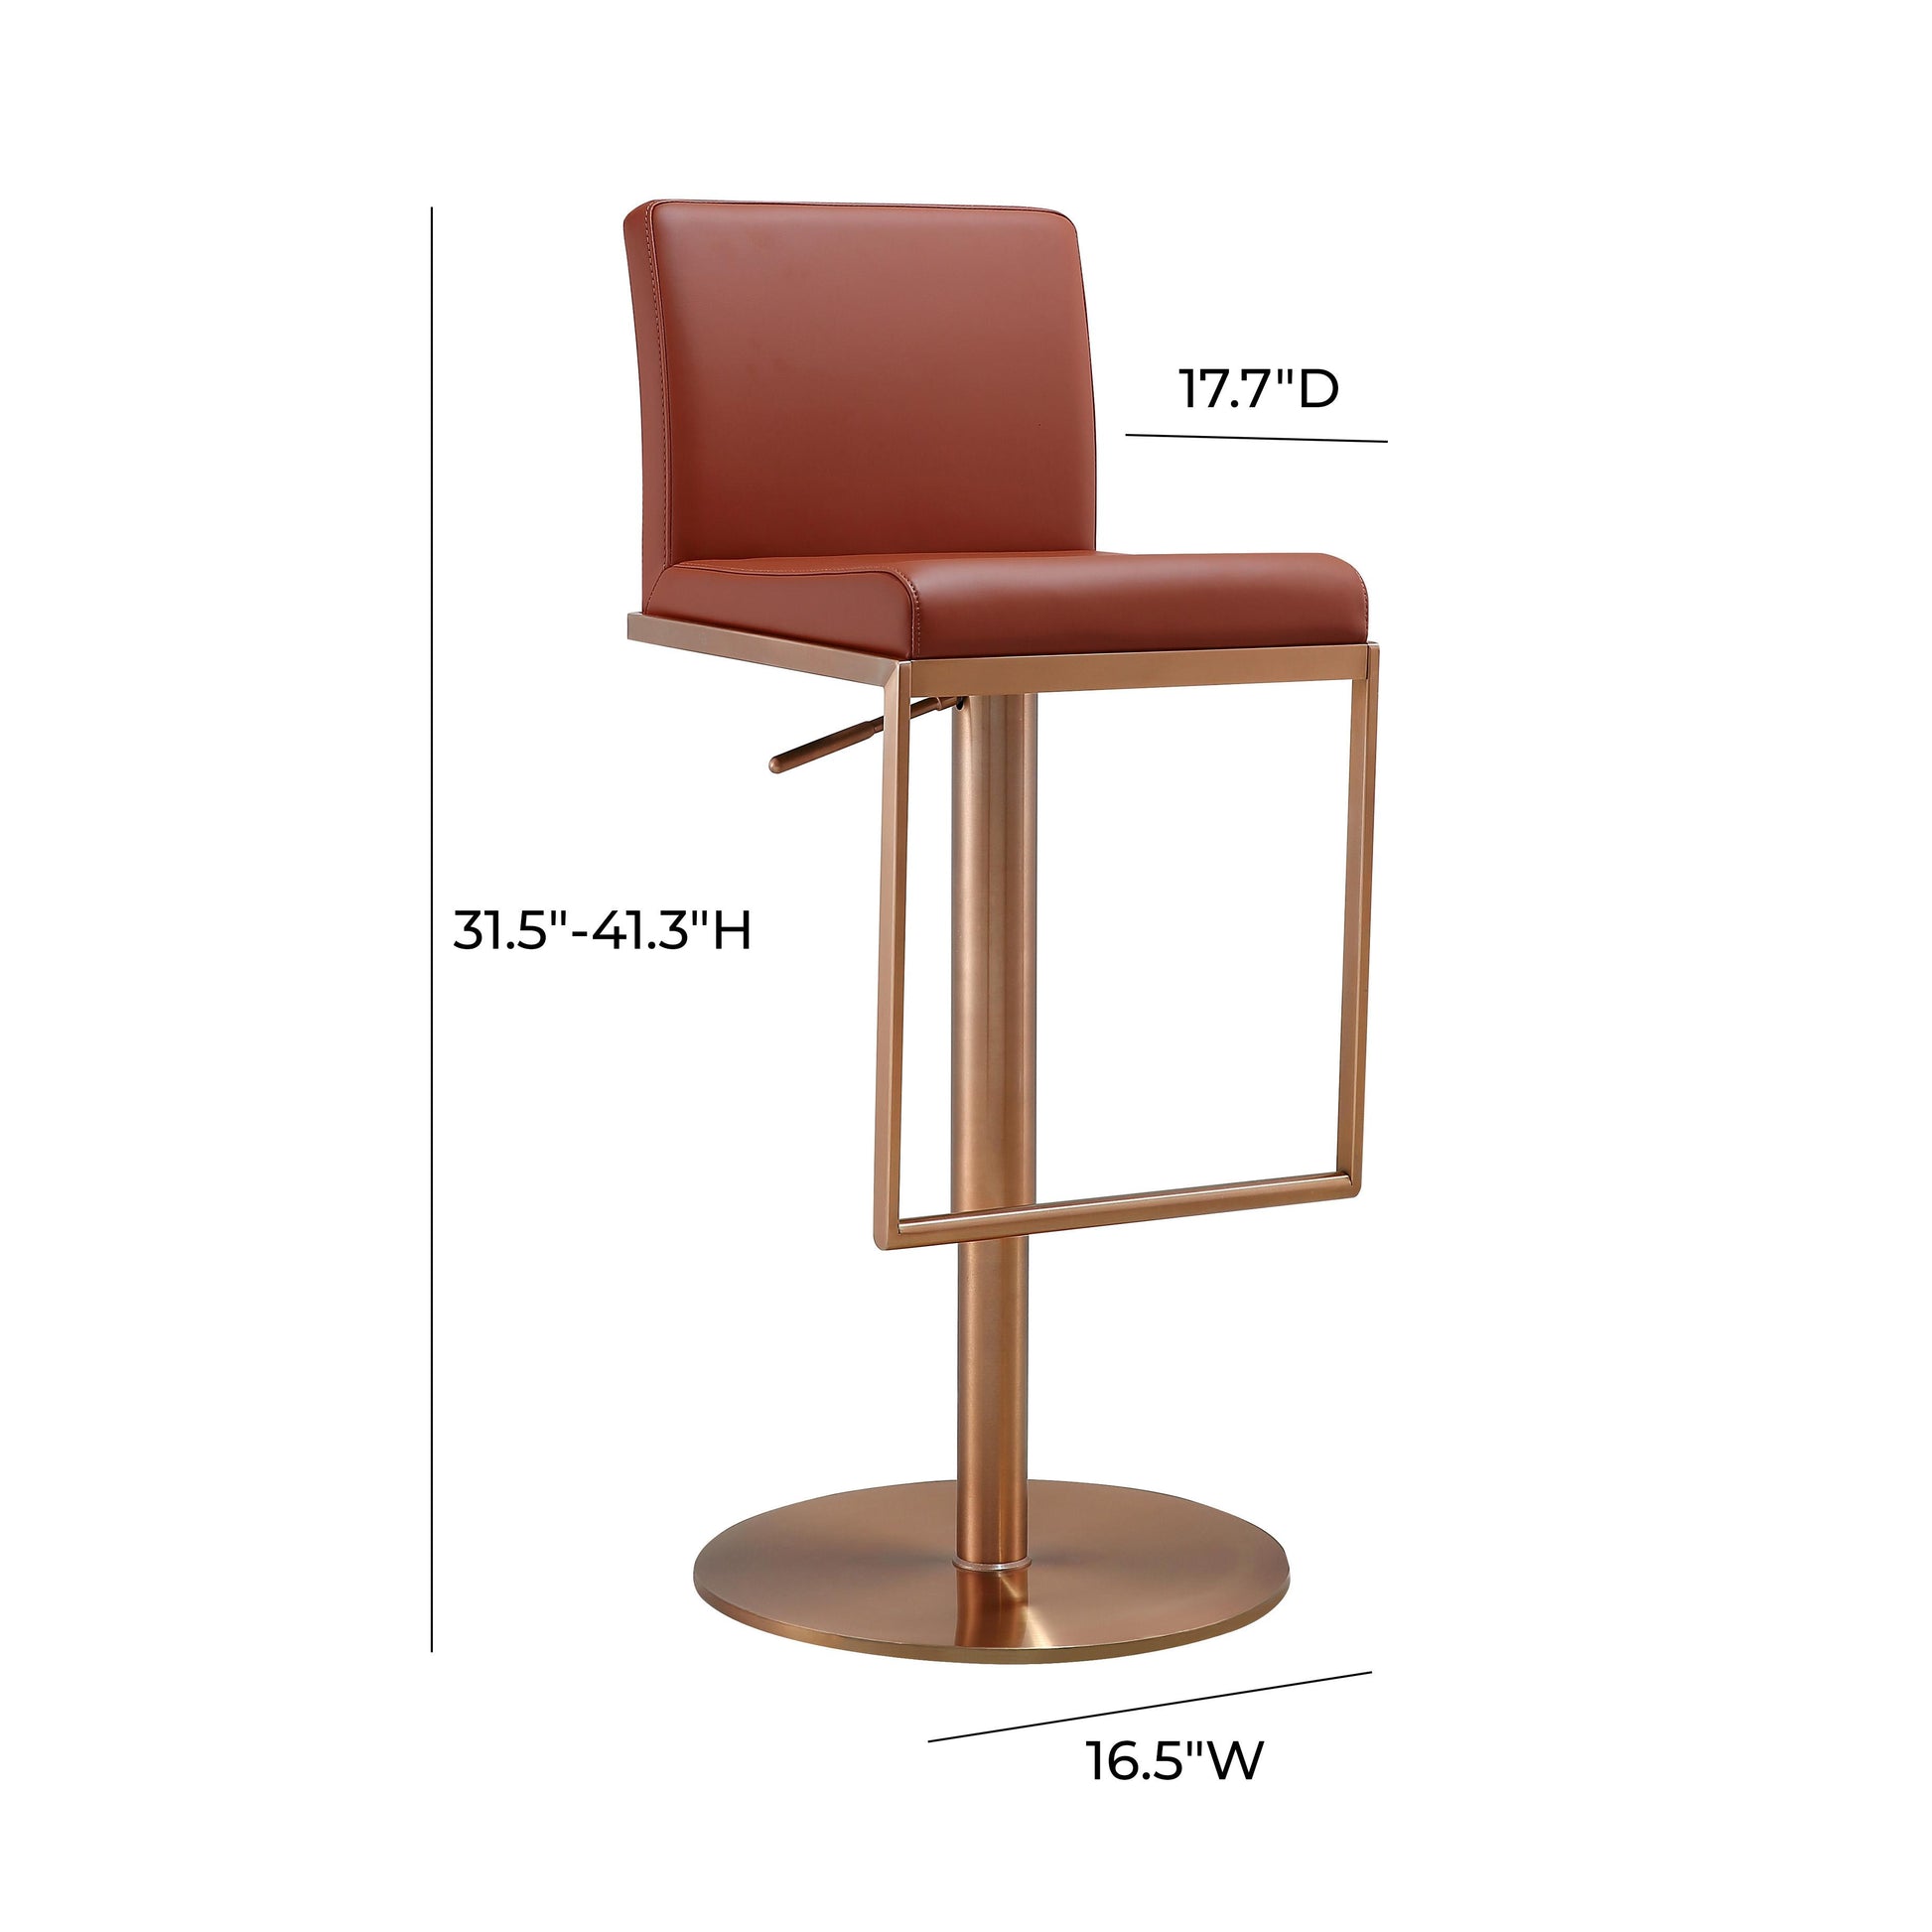 Tov Furniture Sentinel Saddle Brown and Rose Gold Adjustable Stool